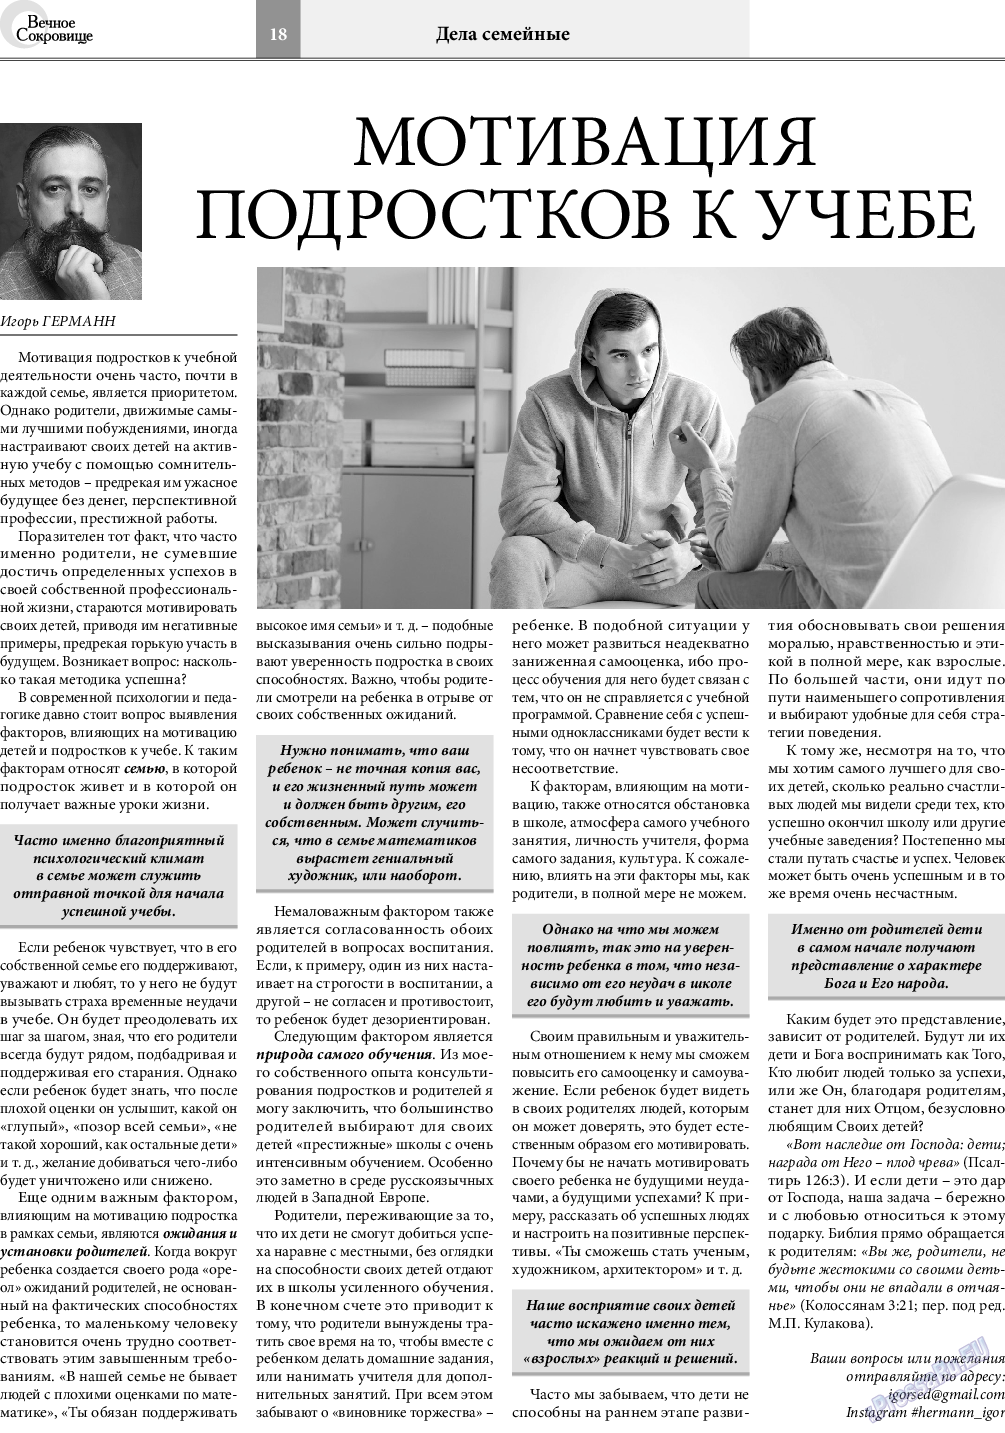 Вечное сокровище, газета. 2021 №4 стр.18